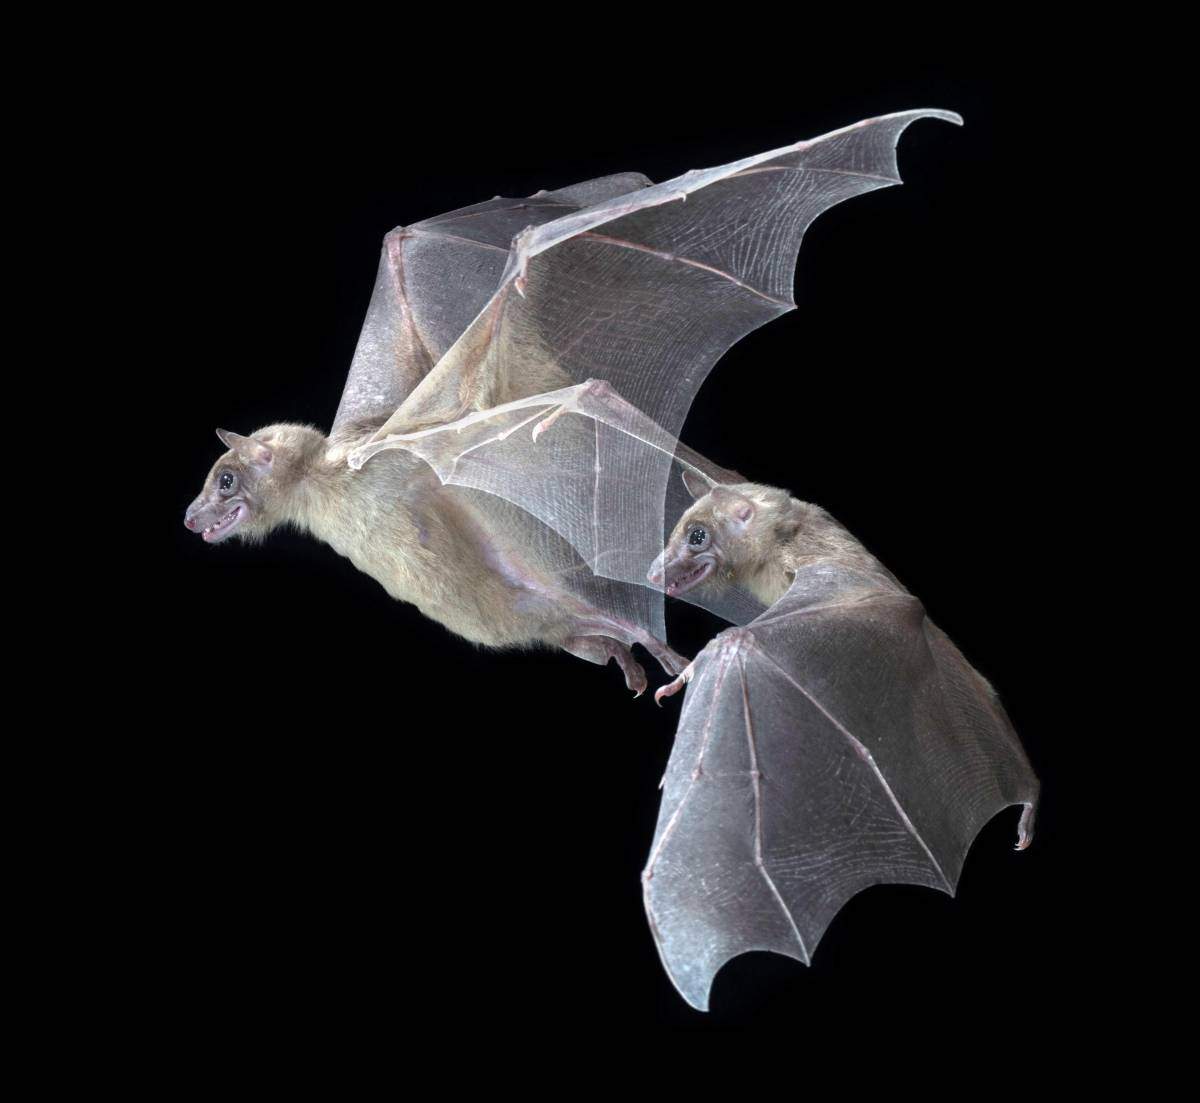  "בדומה לבני אדם, היכולת של עטלפים למקם אחרים במרחב מהותית עבורם". צילום: ברוק פנטון